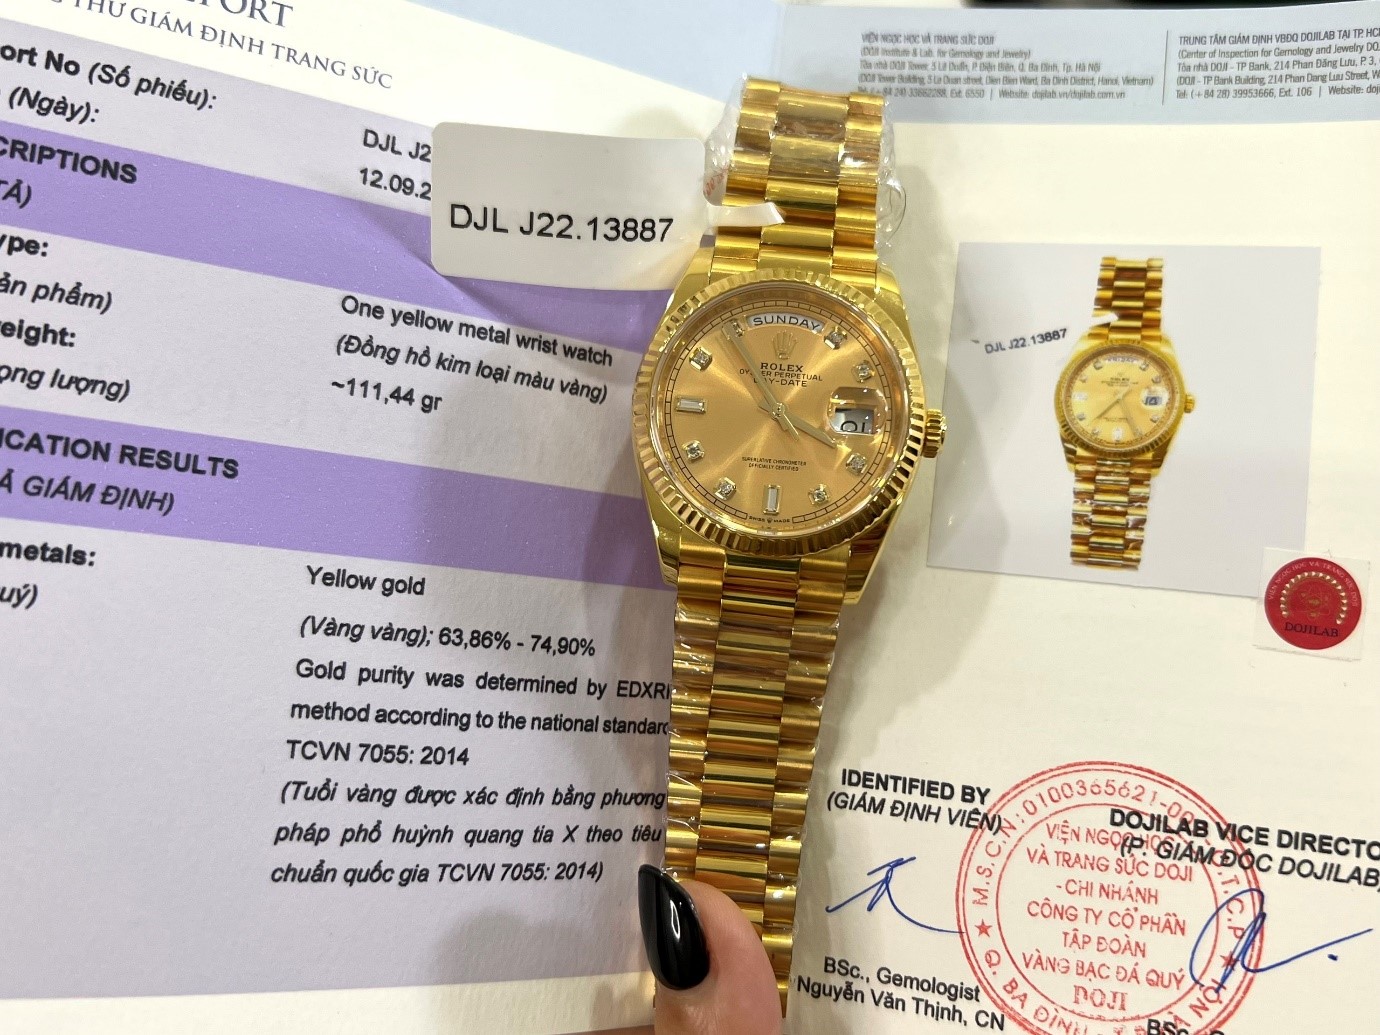 Yên tâm chọn mua đồng hồ Rolex replica tại cơ sở tin cậy